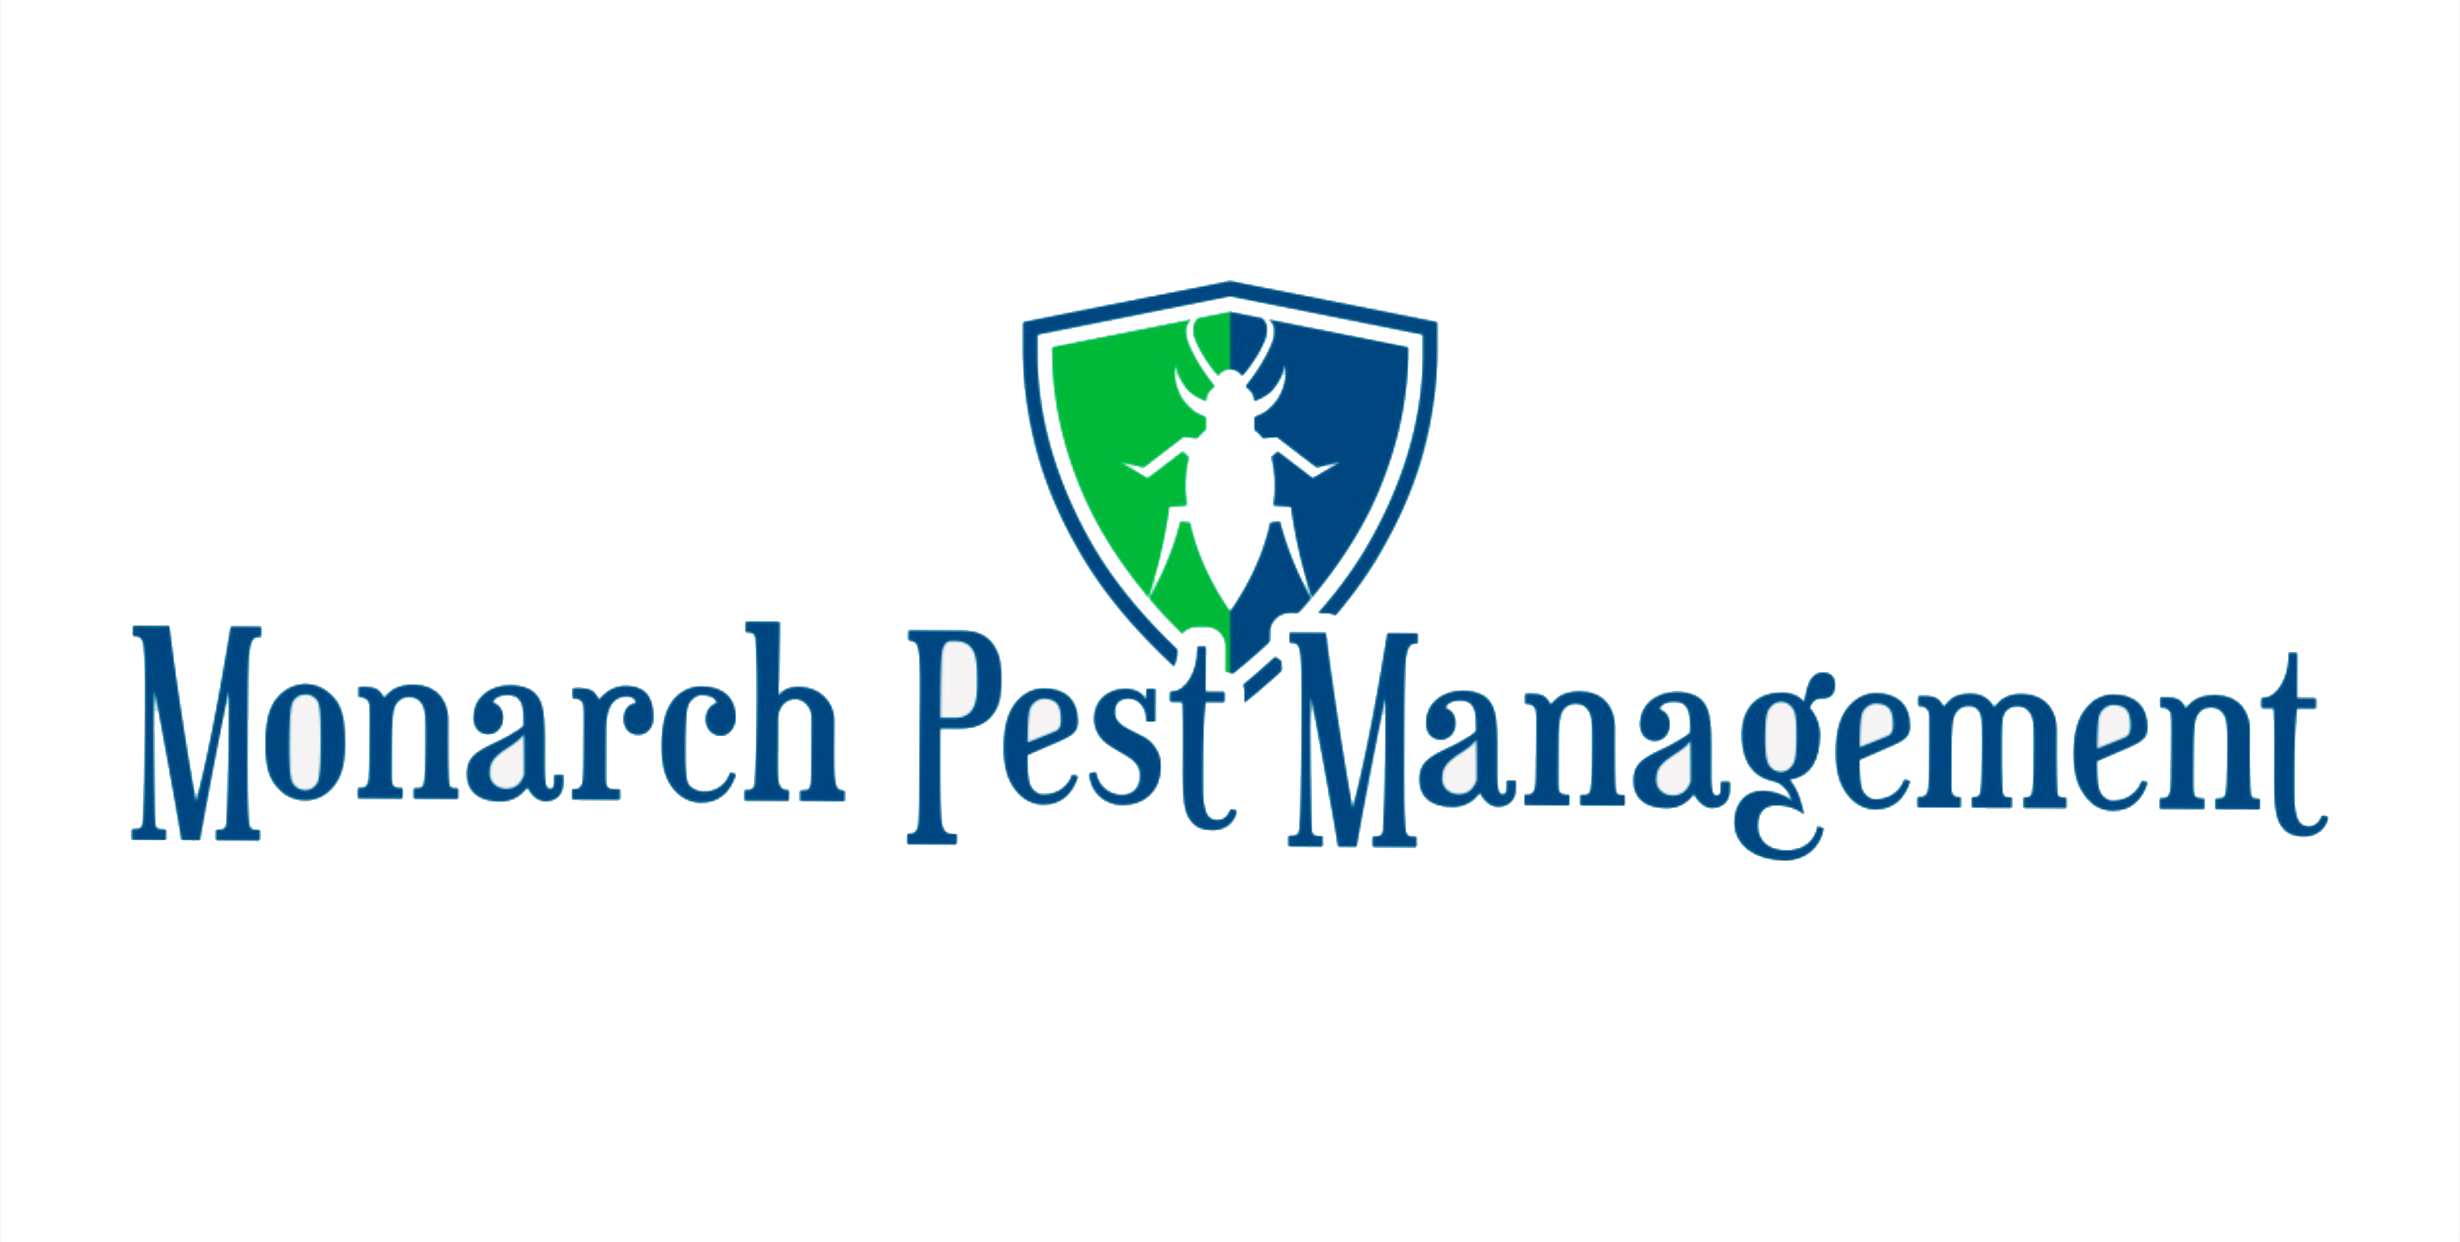 Monarch Pest Management